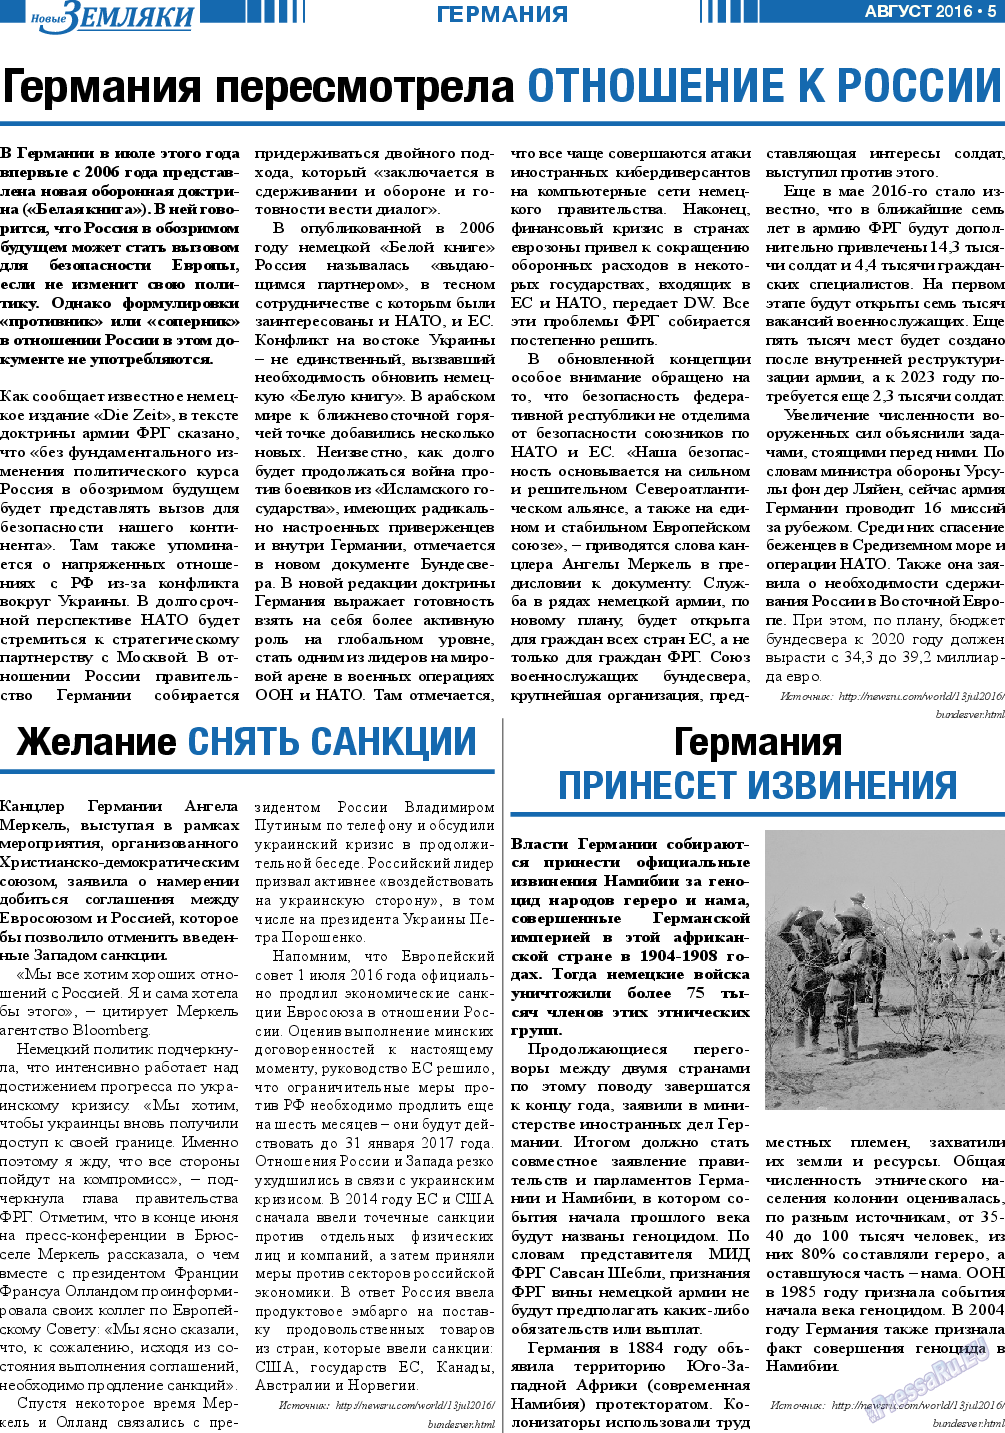 Новые Земляки, газета. 2016 №8 стр.5